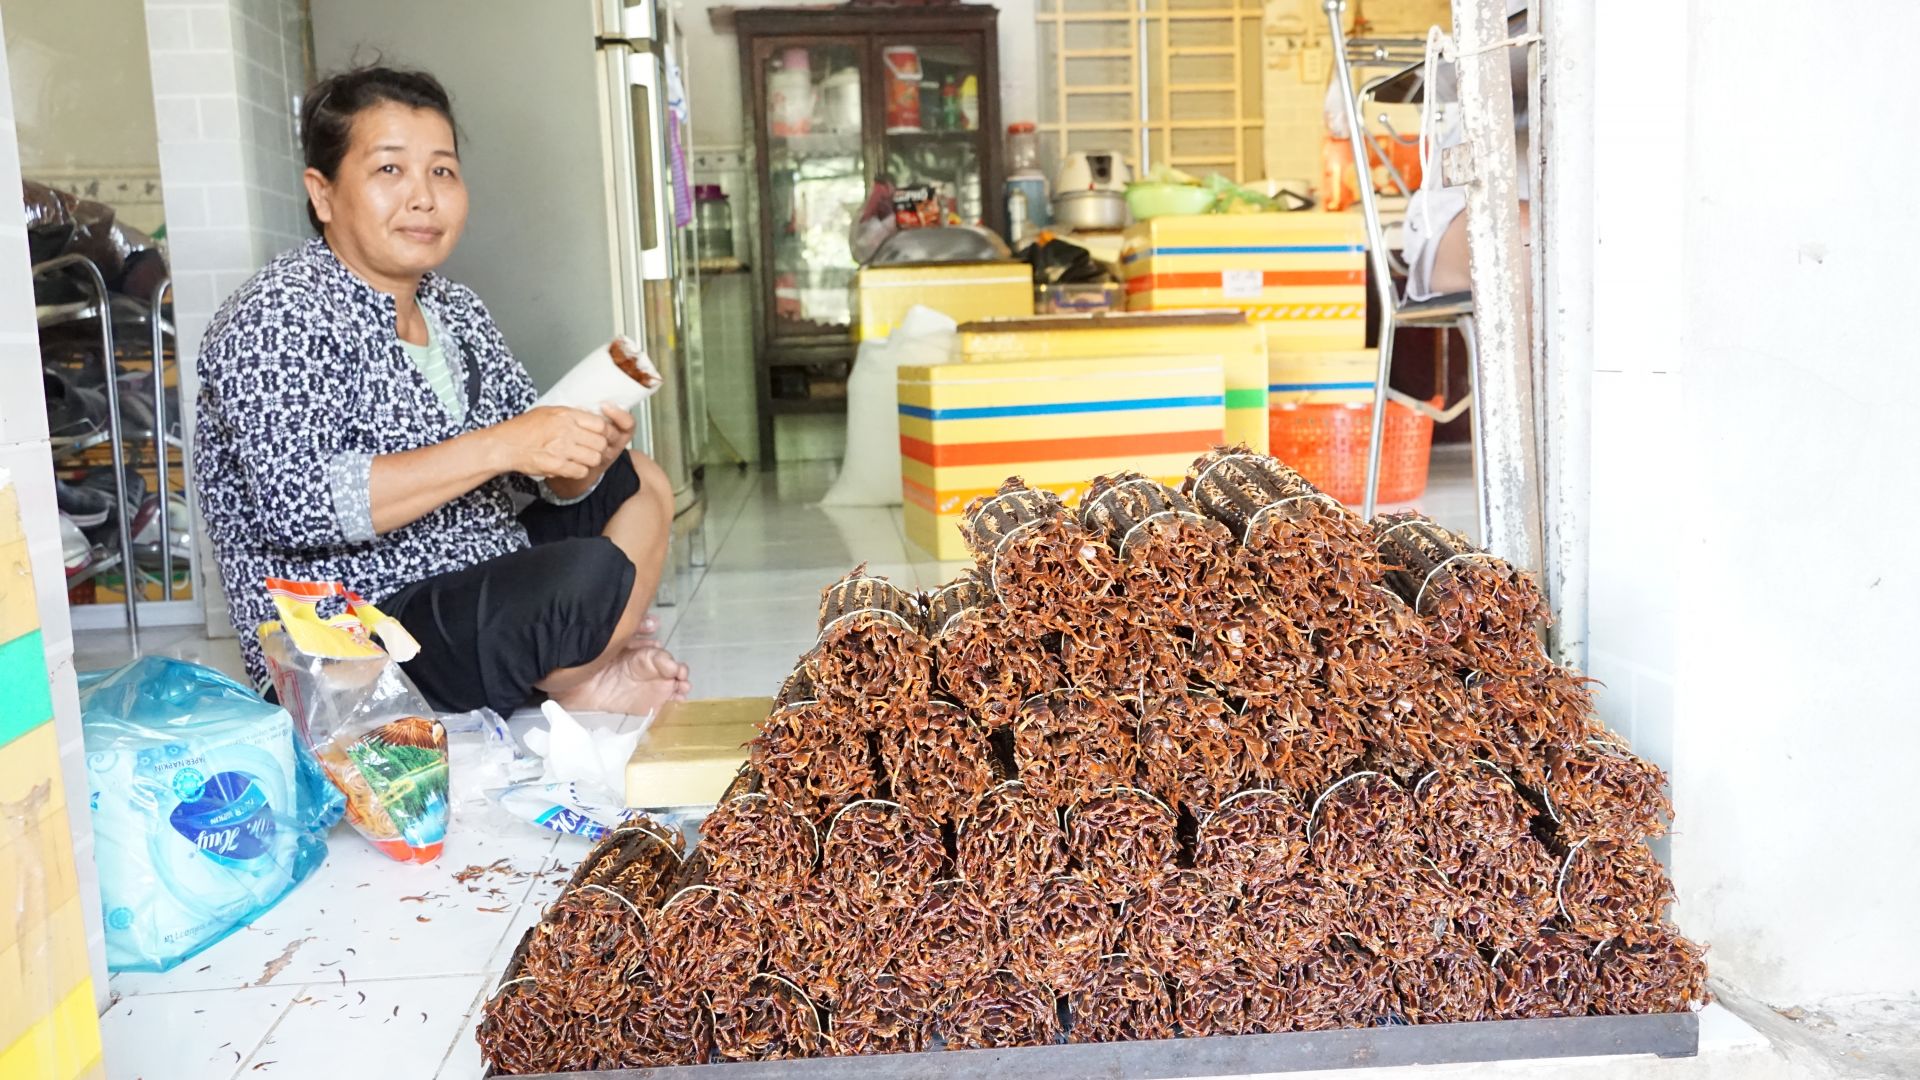 Tây Ninh: Nuôi loài nhiều chân, nghe tên đã thấy hãi hùng, 1kg giá không dưới 1,2 triệu đồng - Ảnh 1.